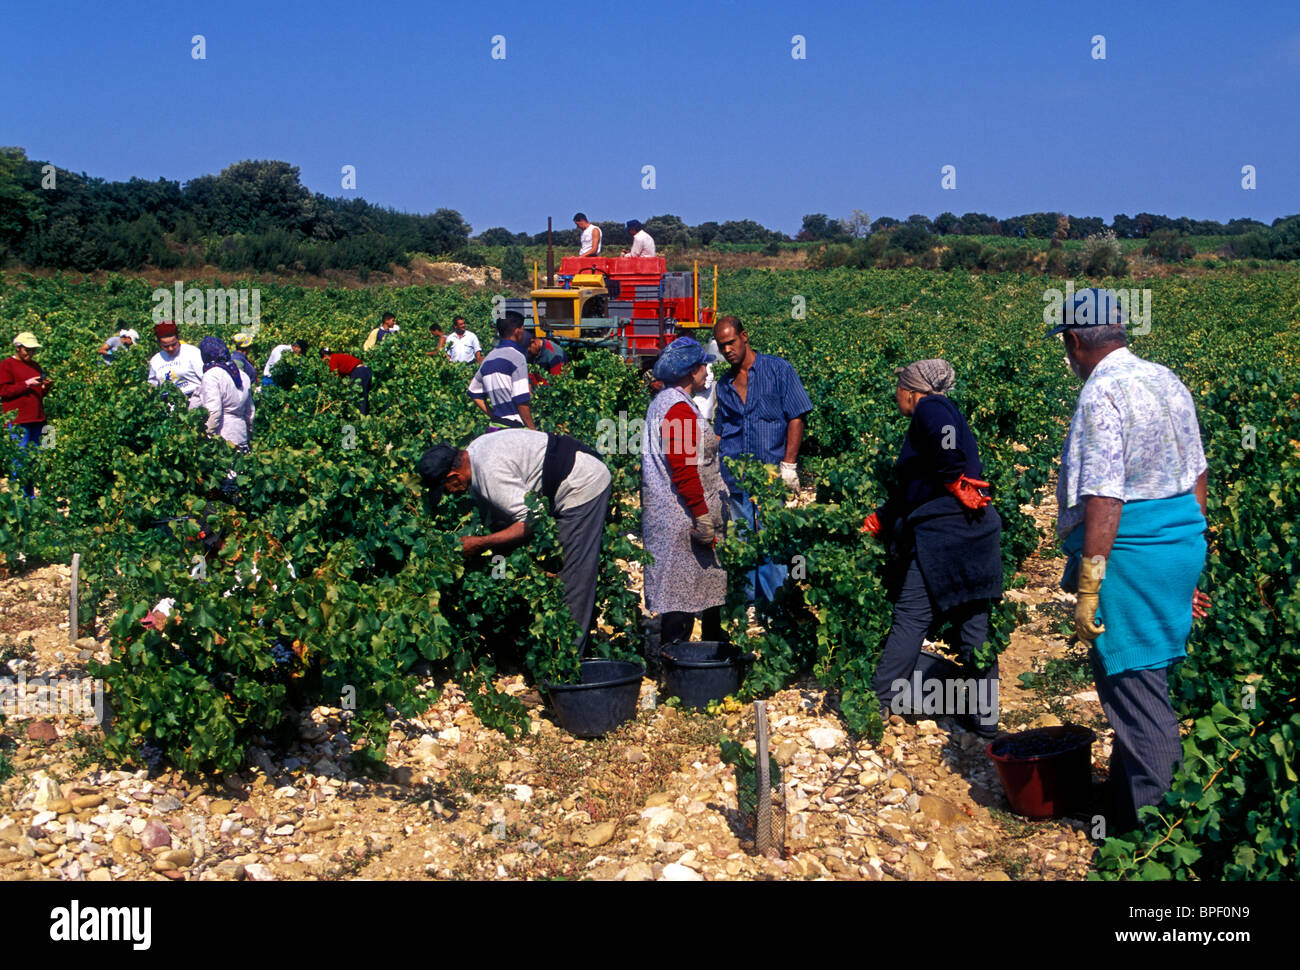 Les marocains, marocain, les immigrants, les travailleurs immigrés, la récolte des raisins, vendanges, vignes, Chateauneuf-du-Pape, France Banque D'Images